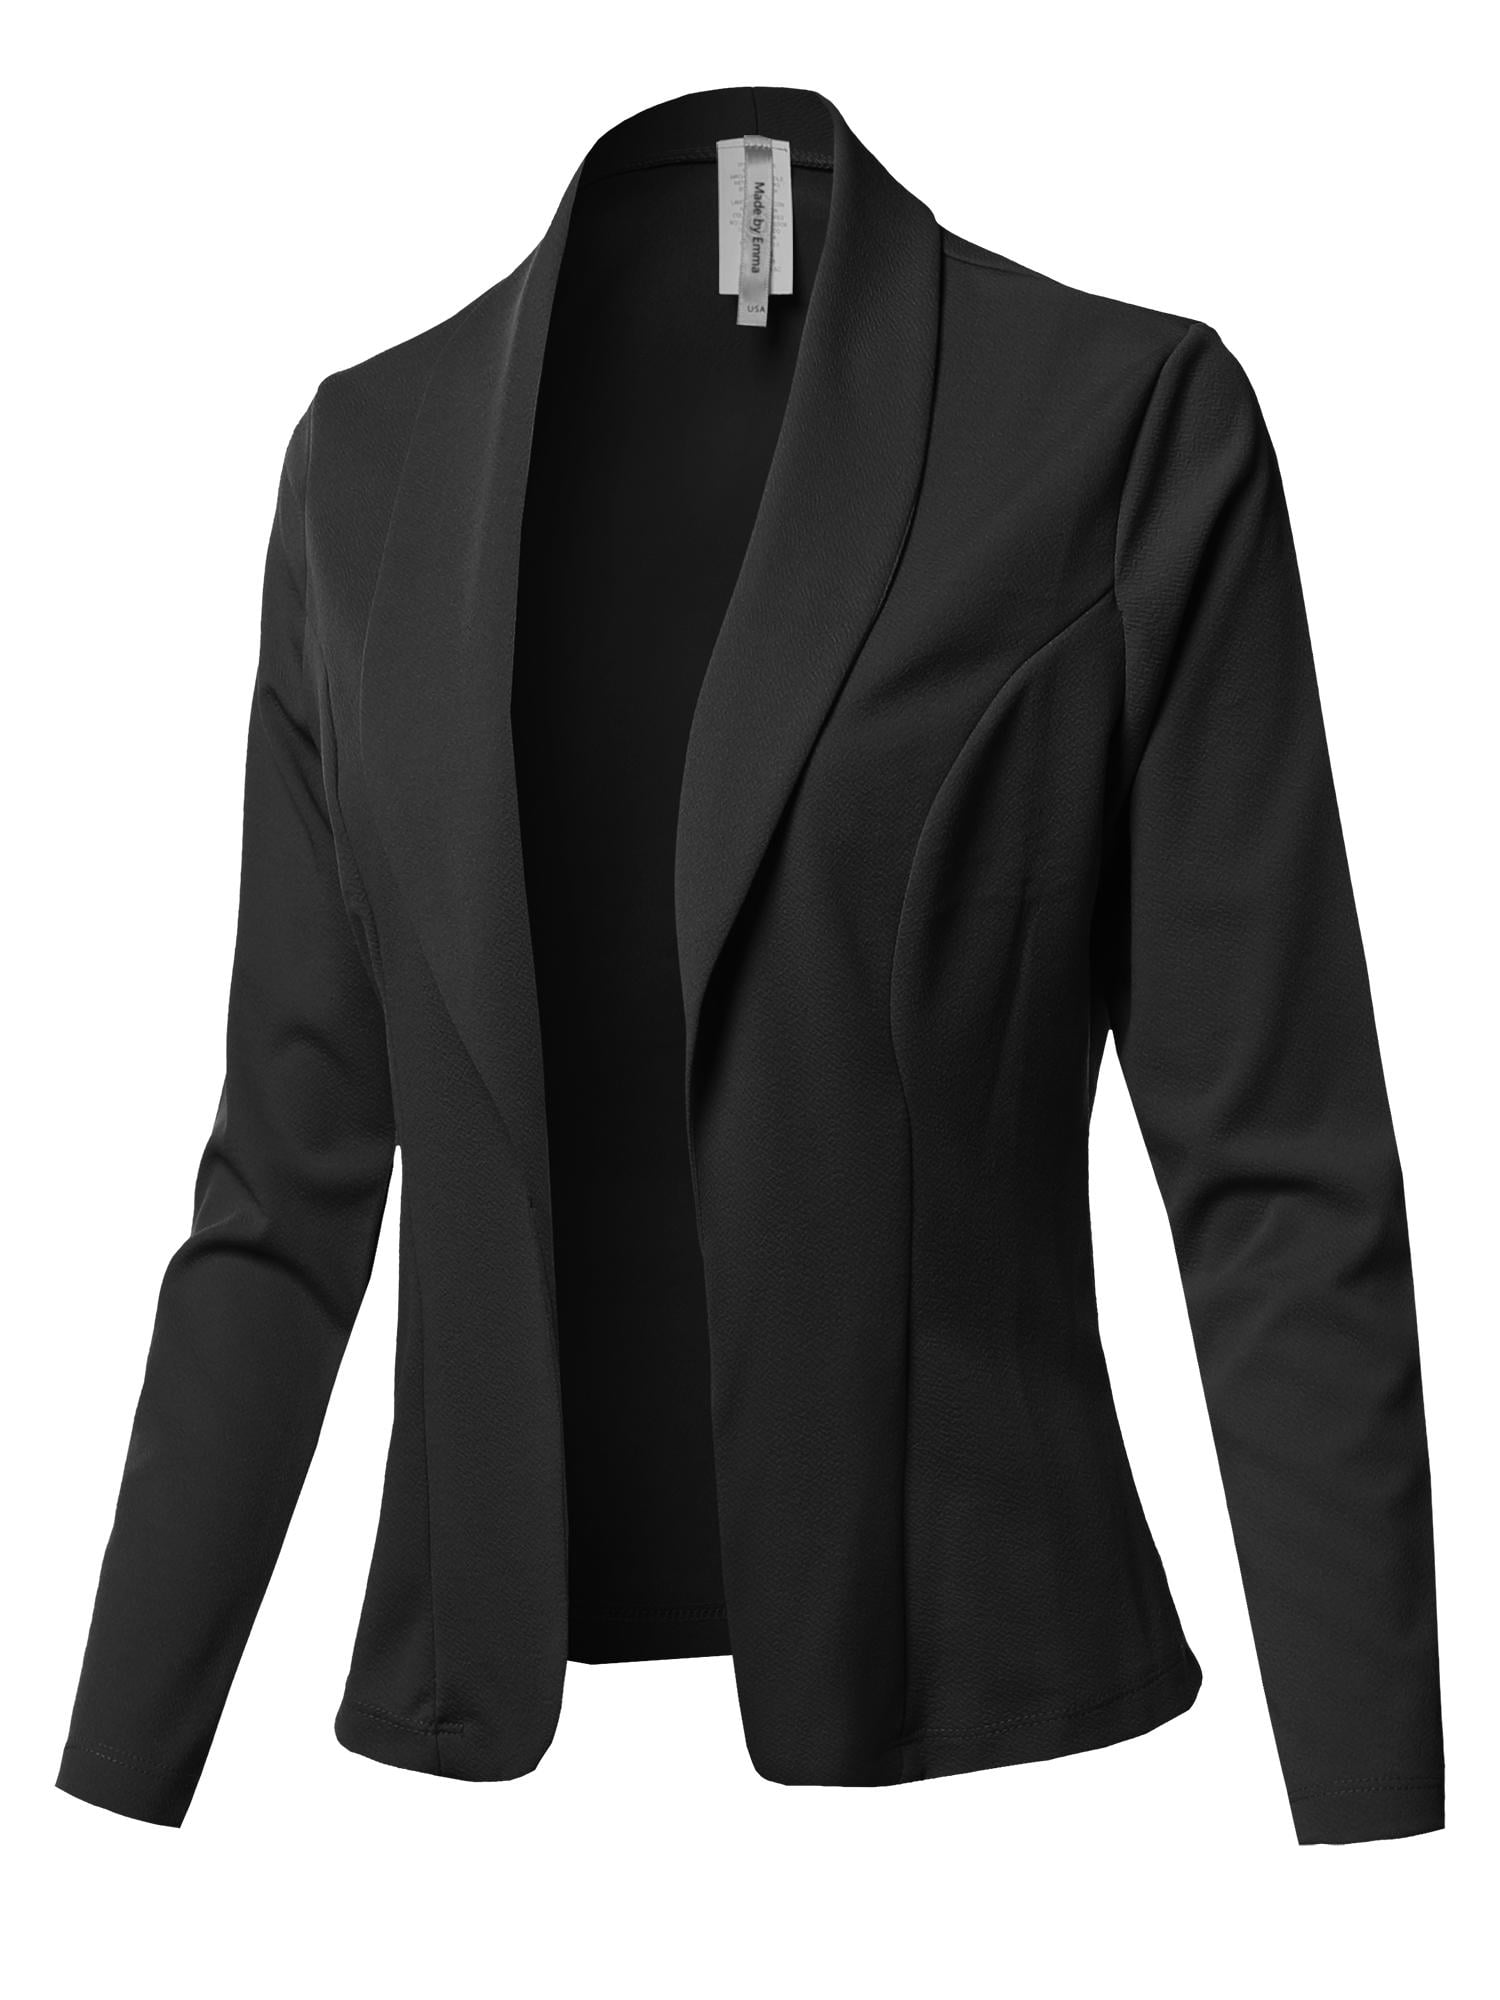 Women's Solid Long sleeve Open Front Office Blazer Jacket - Walmart.com